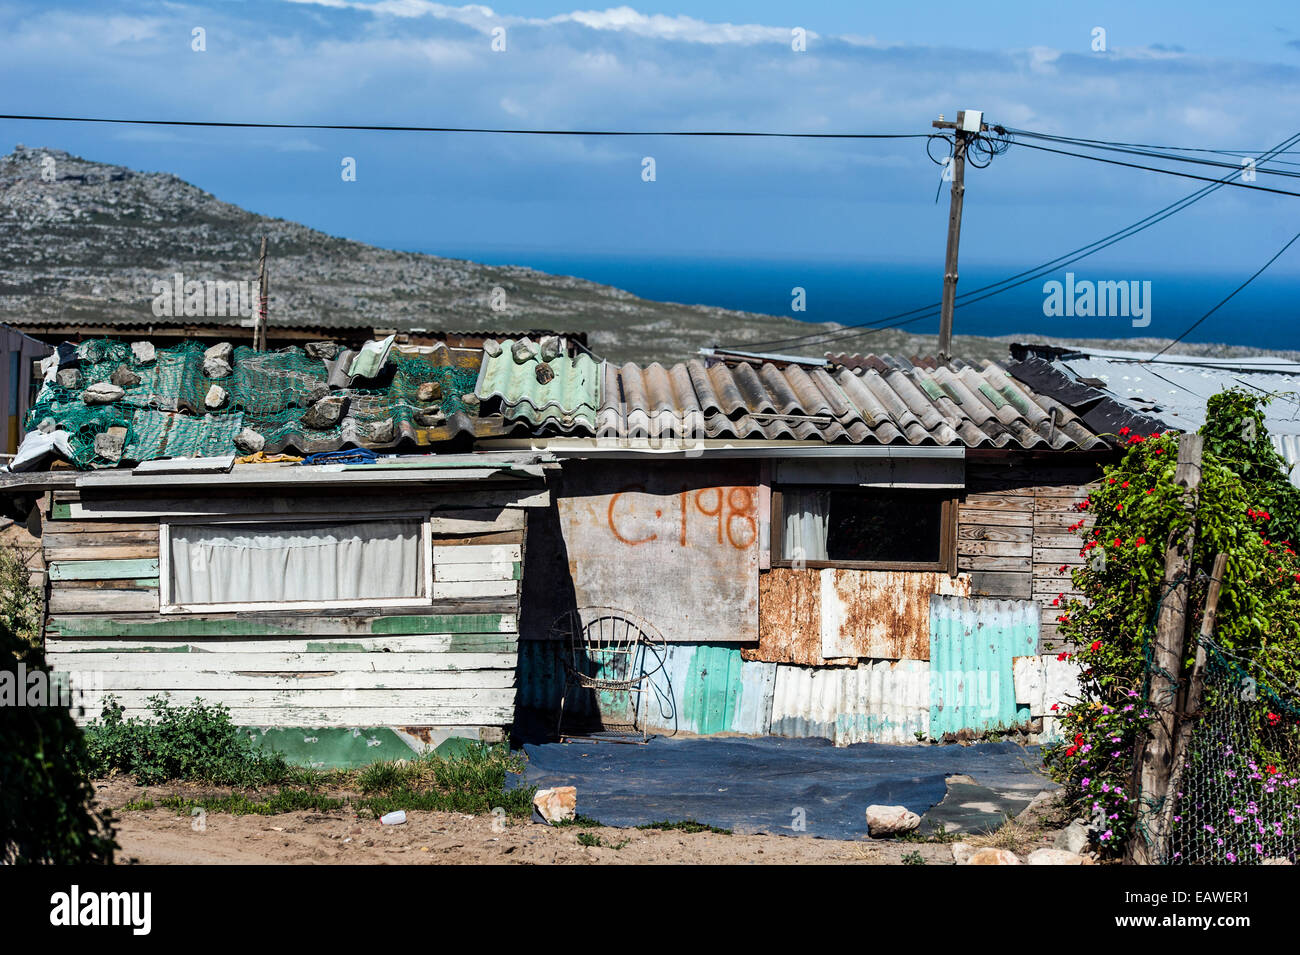 Township case fatte di metallo di scarto per sfollati rifugiati africani. Foto Stock